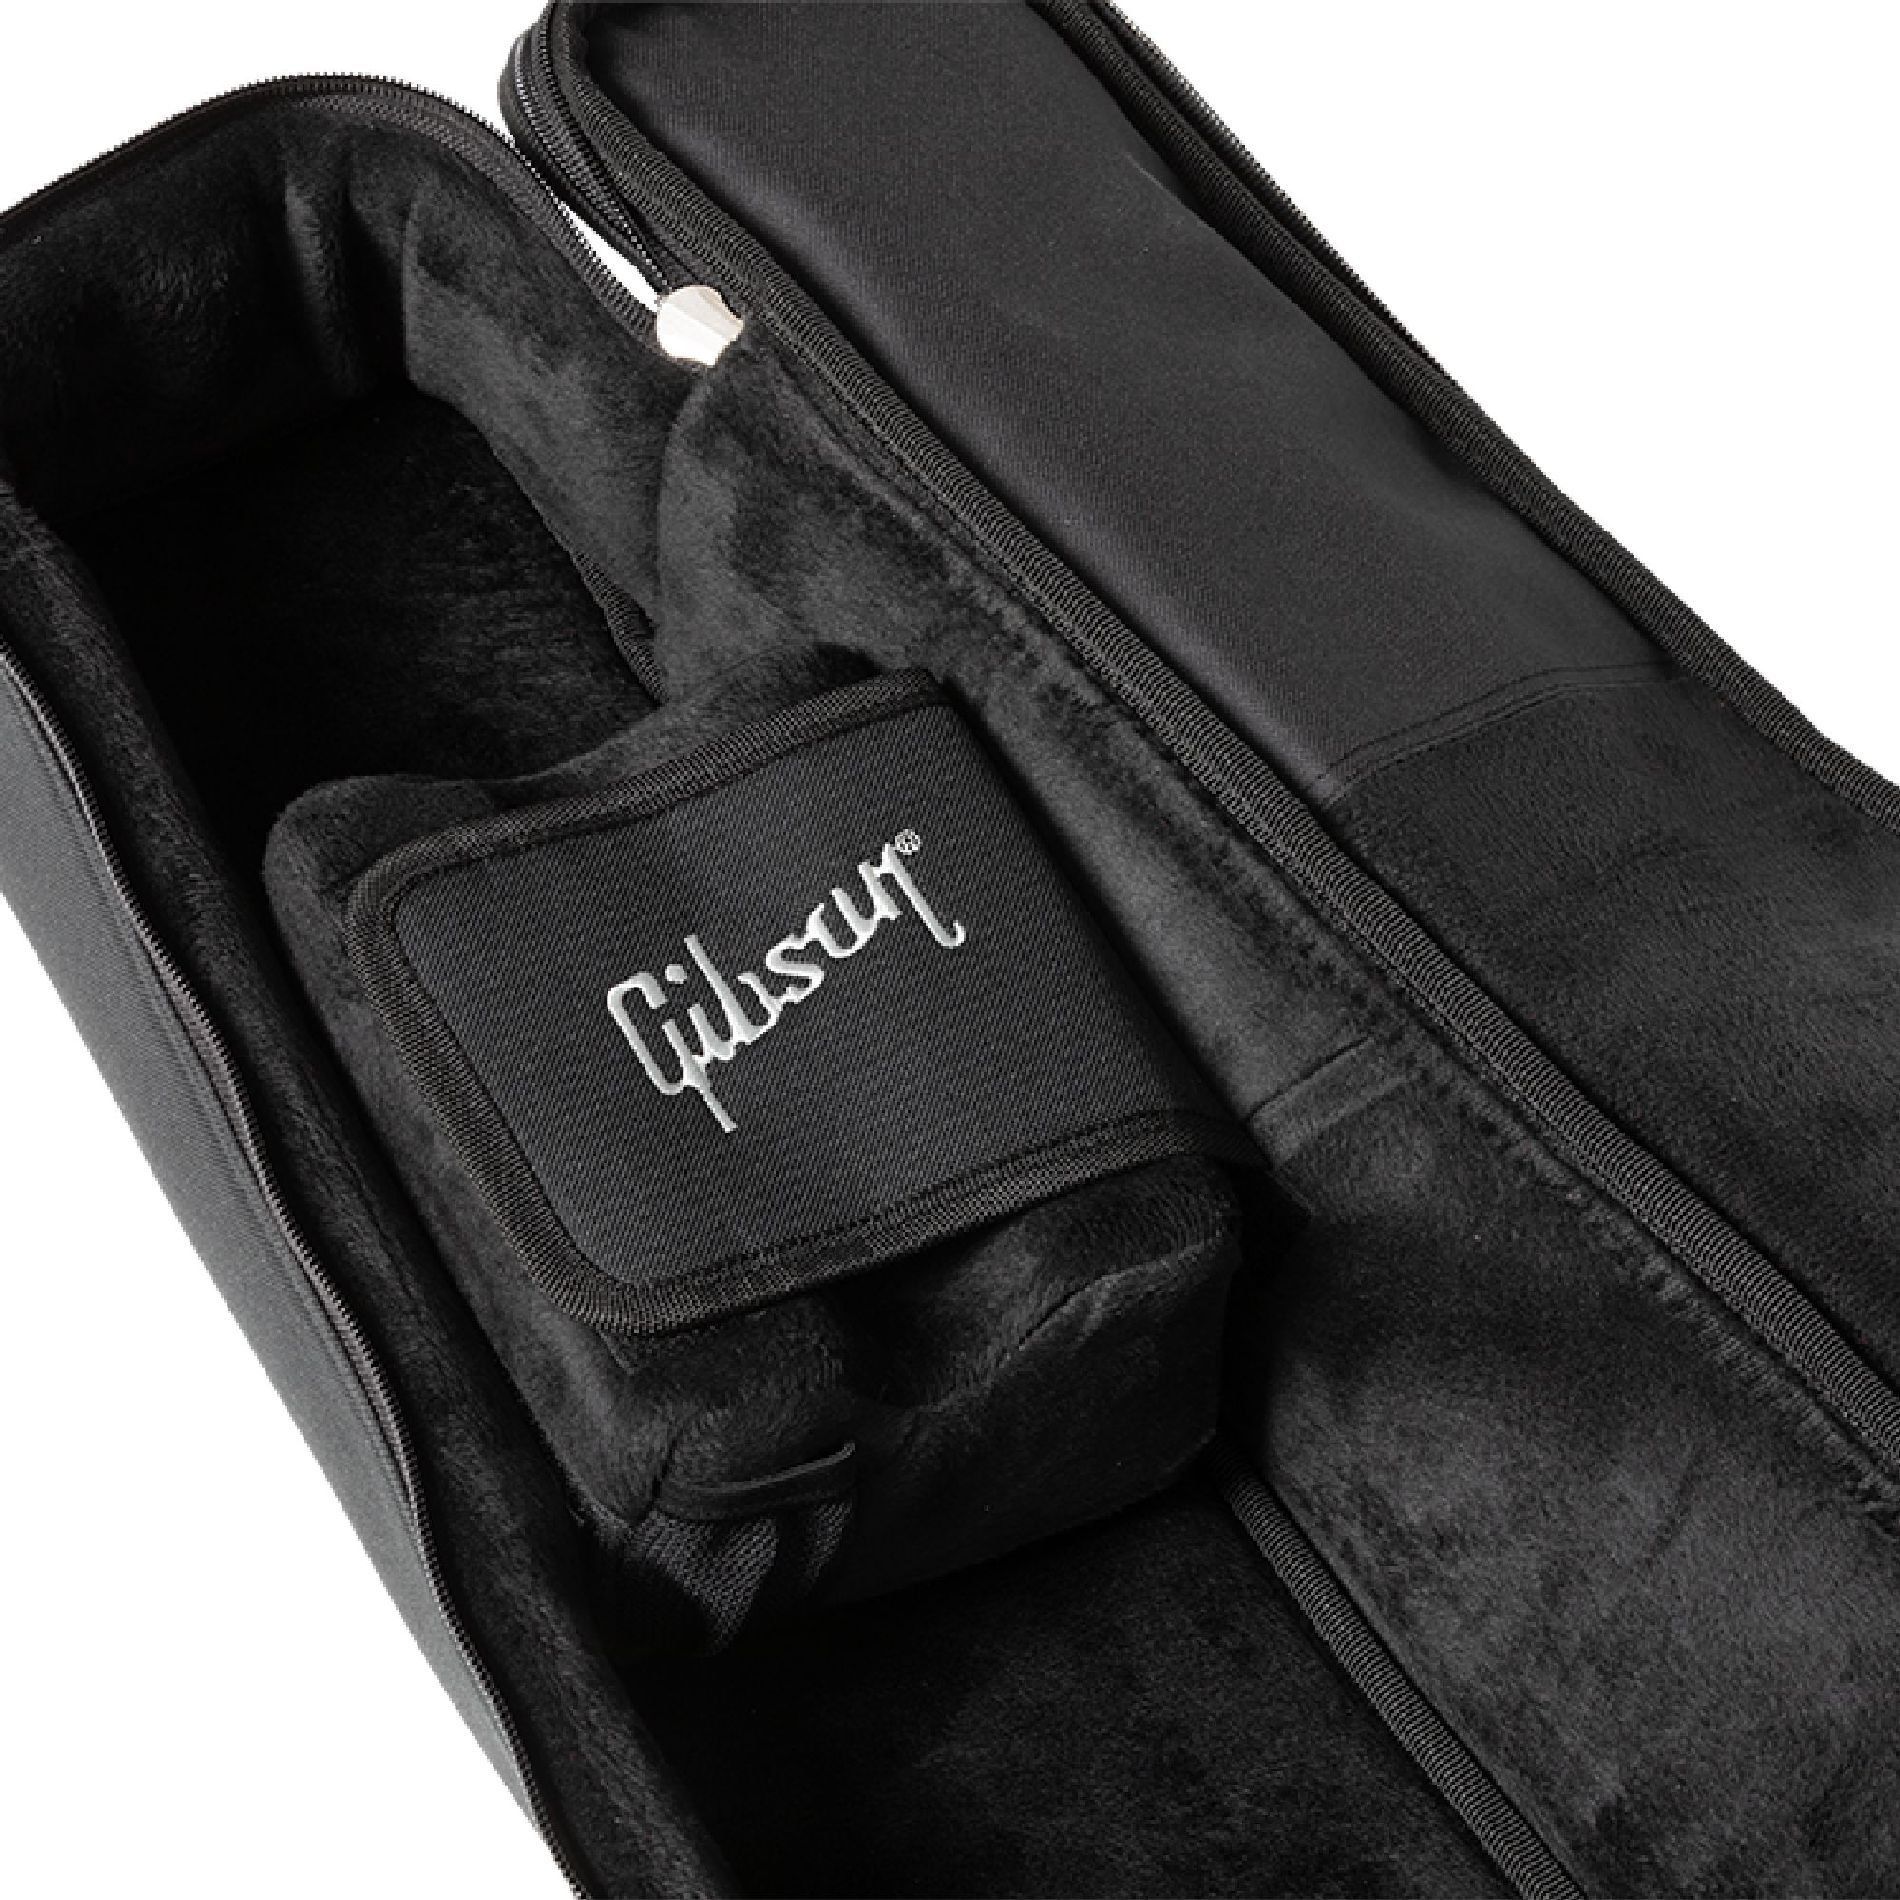 Gibson Premium Gigbag, SJ-200 Black Чехлы и кейсы для гитар